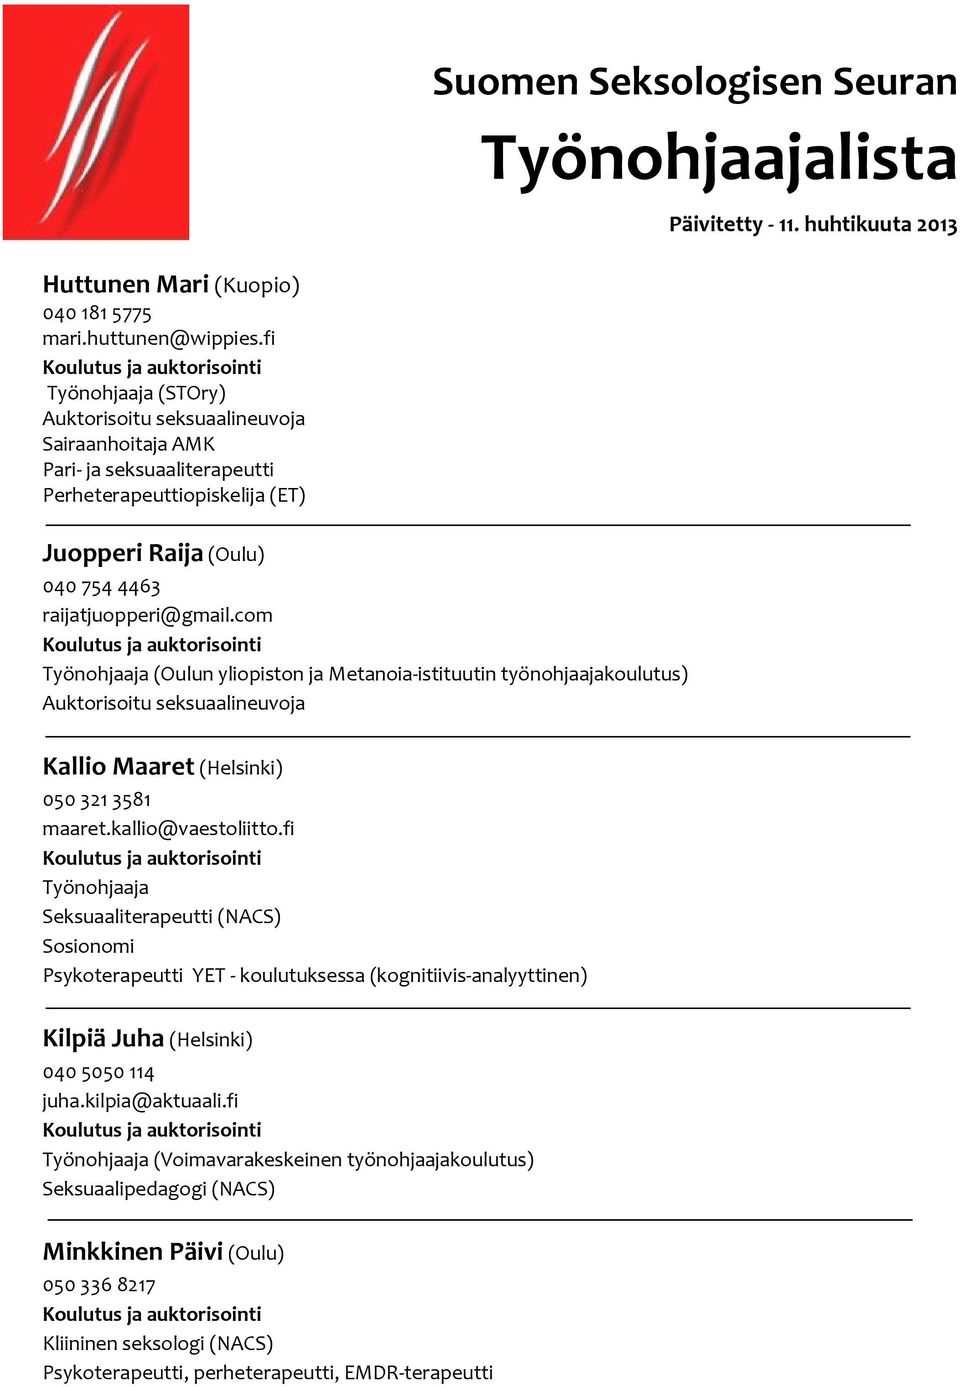 com (Oulun yliopiston ja Metanoia-istituutin työnohjaajakoulutus) Kallio Maaret (Helsinki) 050 321 3581 maaret.kallio@vaestoliitto.